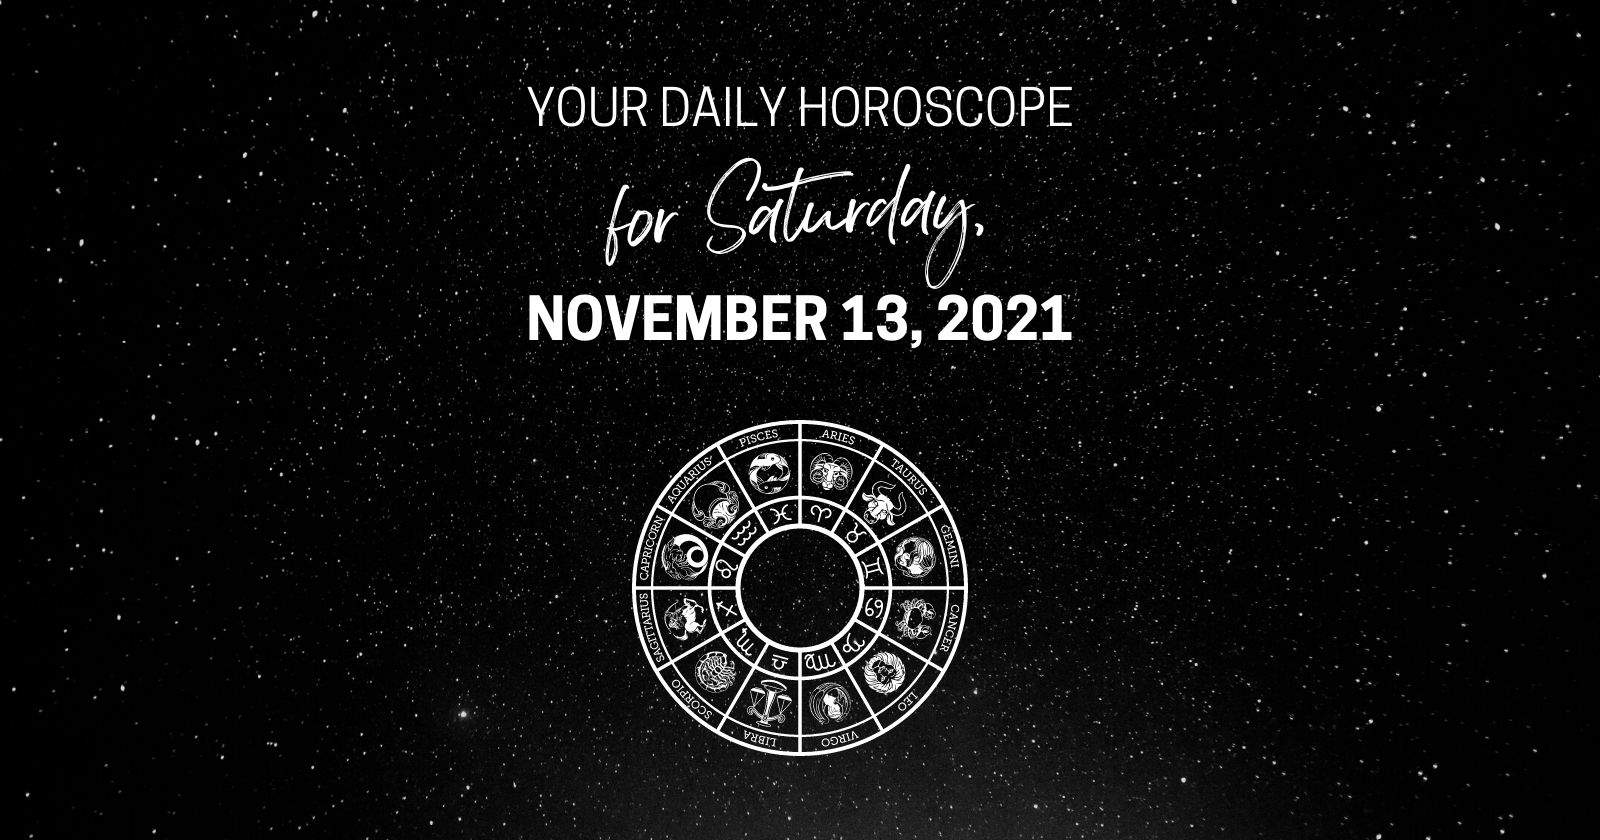 Oroscopo giornaliero per sabato 13 novembre 2021.